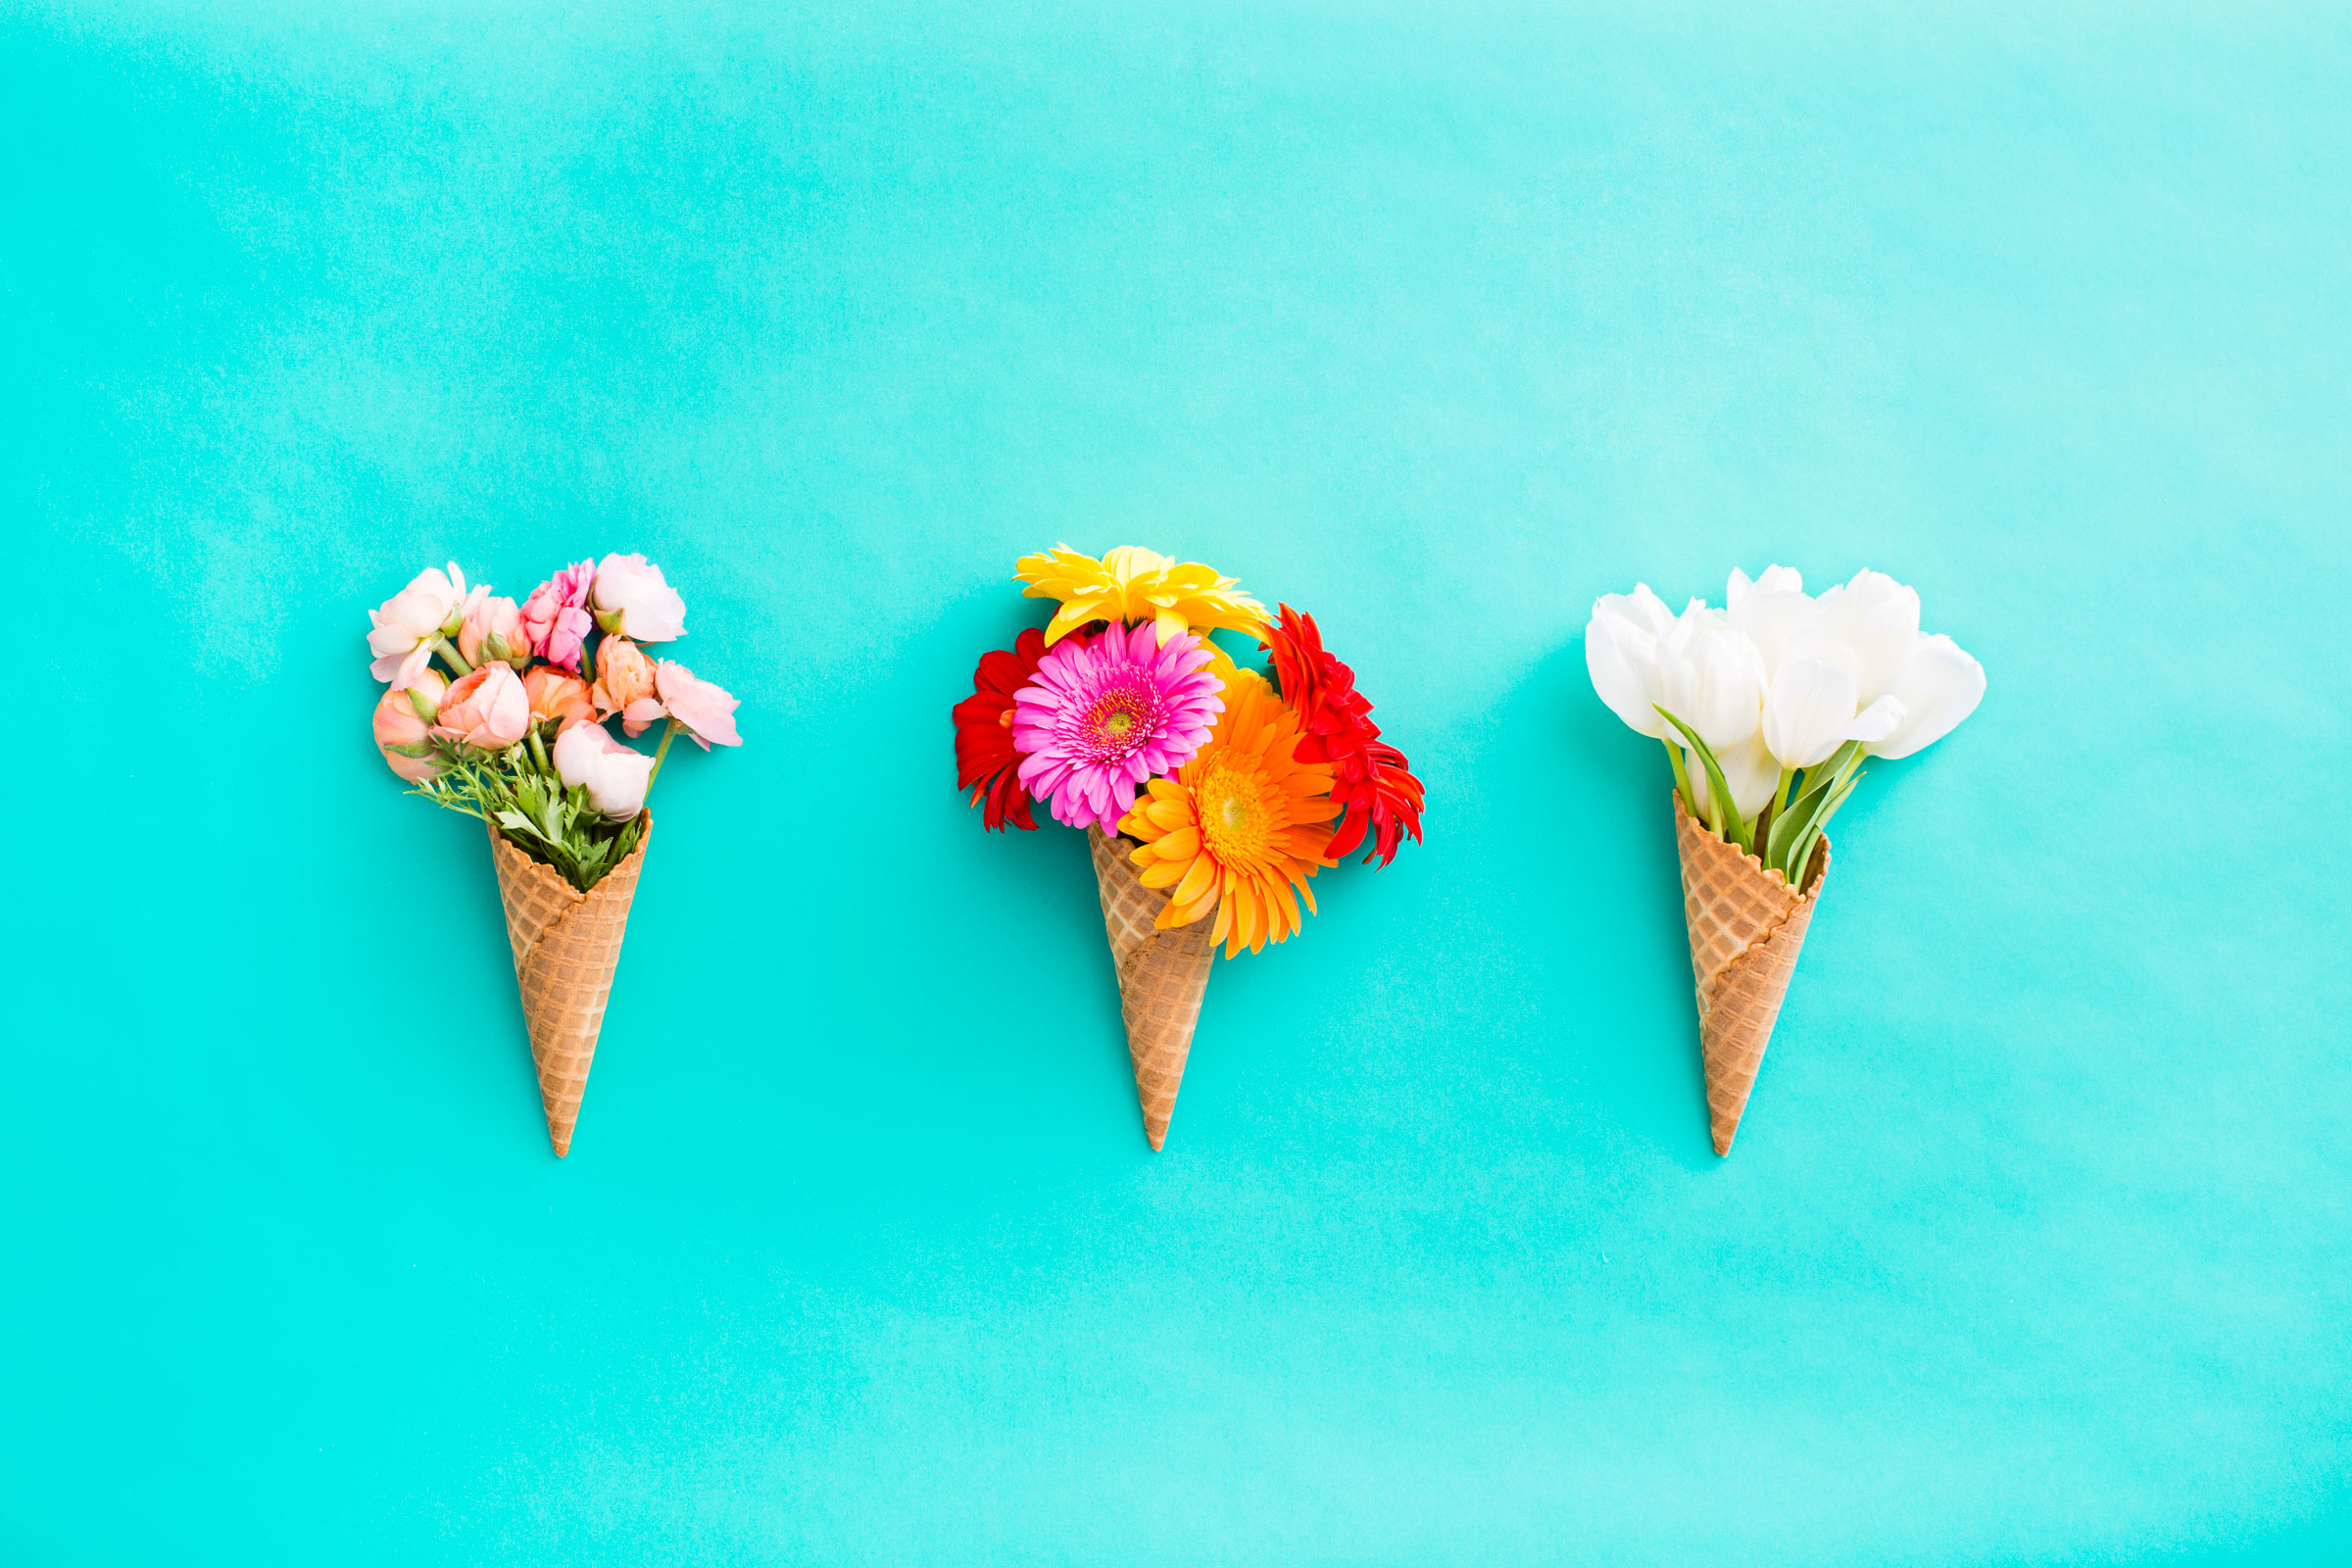 クリーム色の花の壁紙,アイスクリームコーン,アイスクリーム,デザート,食物,ジェラート